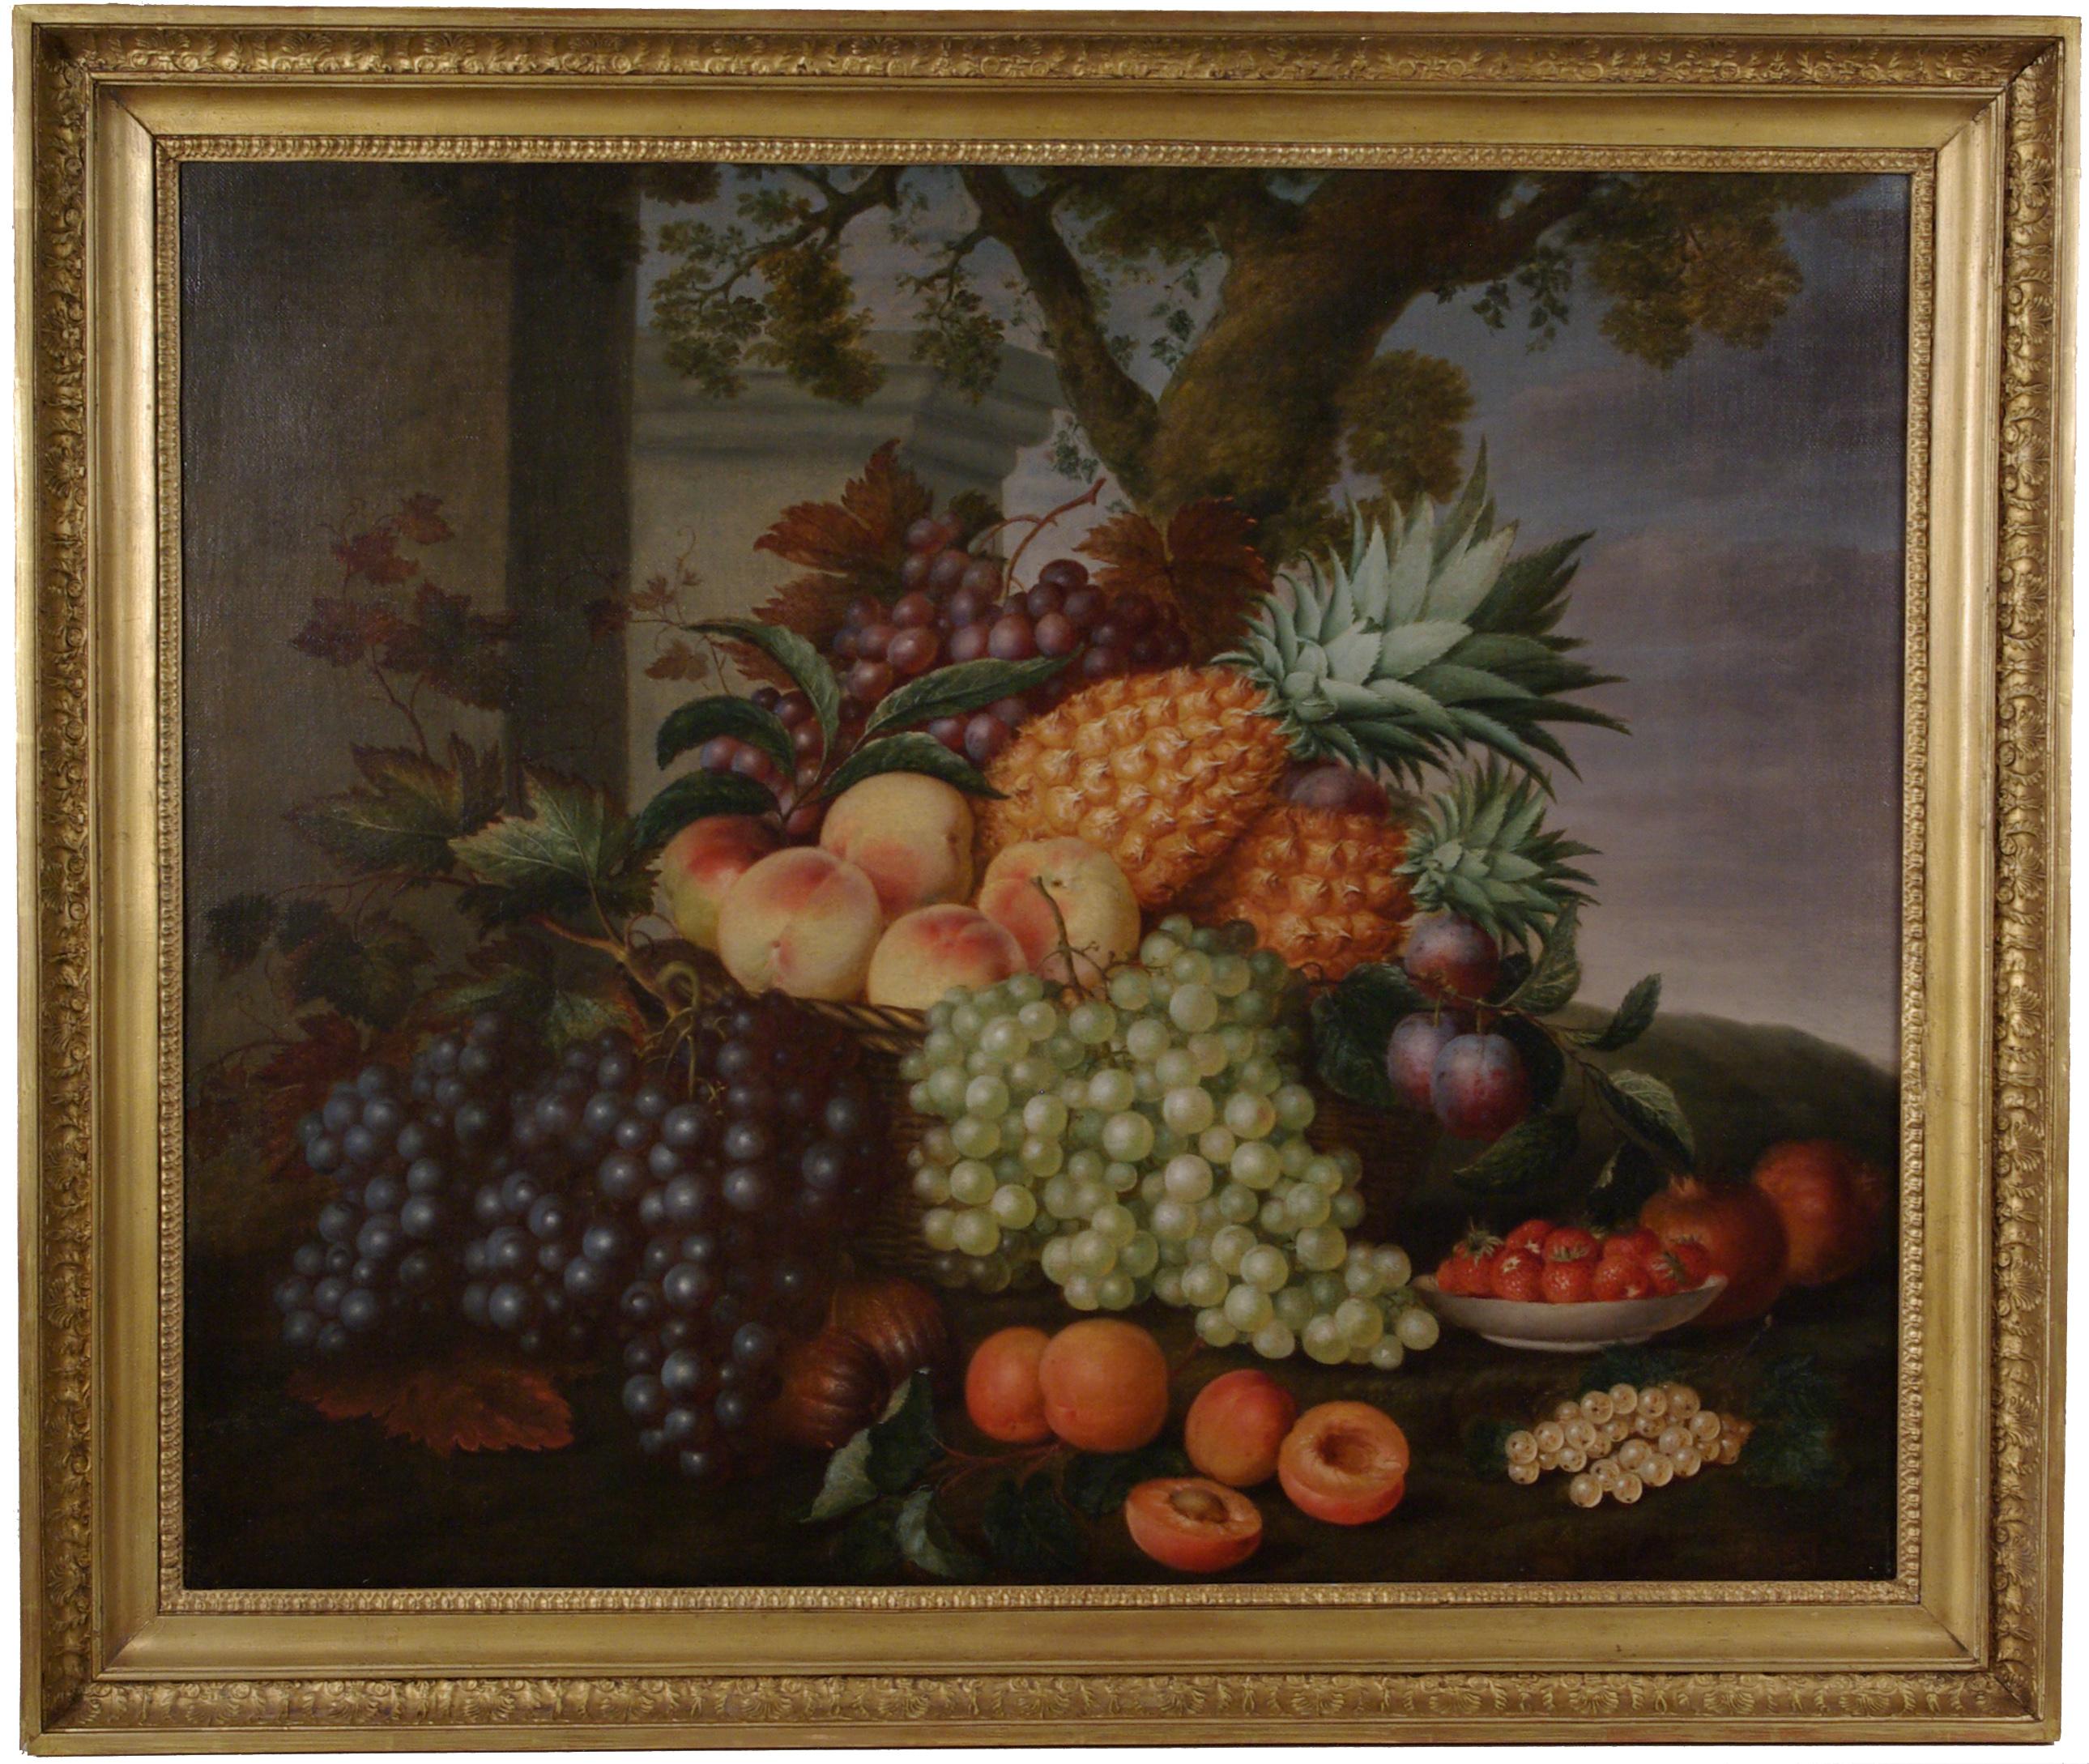 Stillleben mit Ananas, Blättern, Trauben, Pflaumen und anderen Früchten in einer Landschaft  – Painting von  George William Sartorius